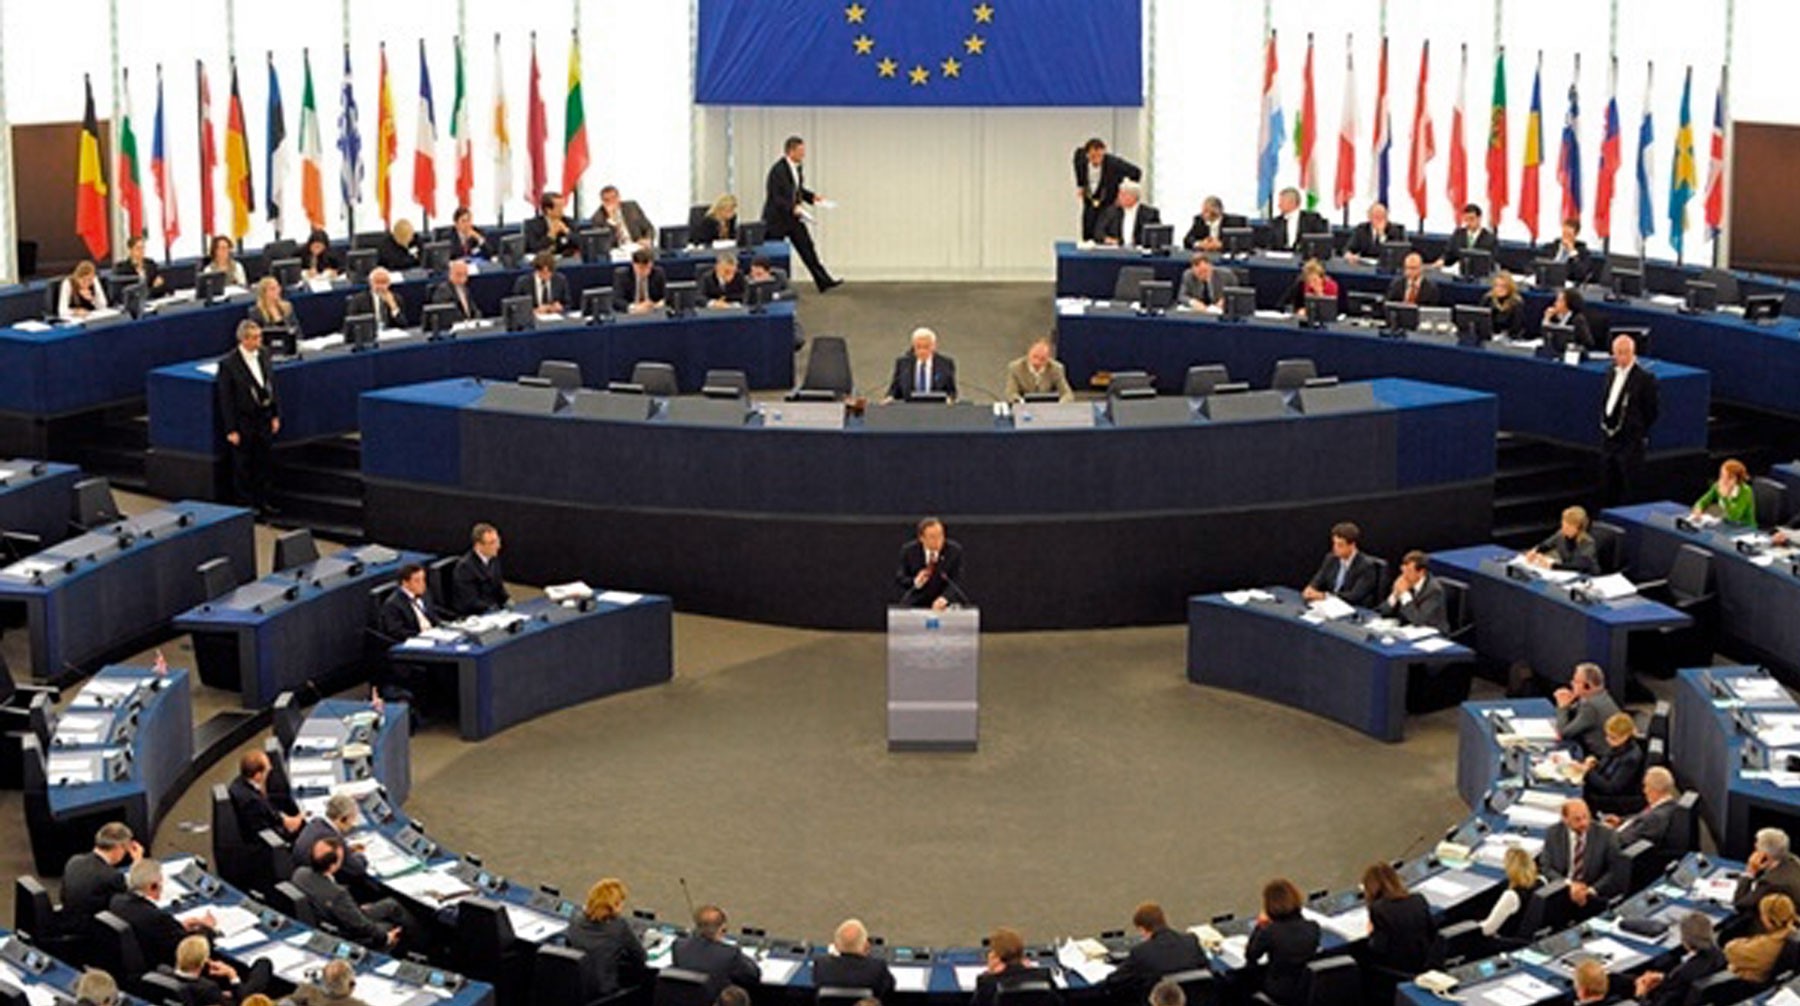 Dailystorm - Европарламент отказался считать Россию стратегическим партнером ЕС